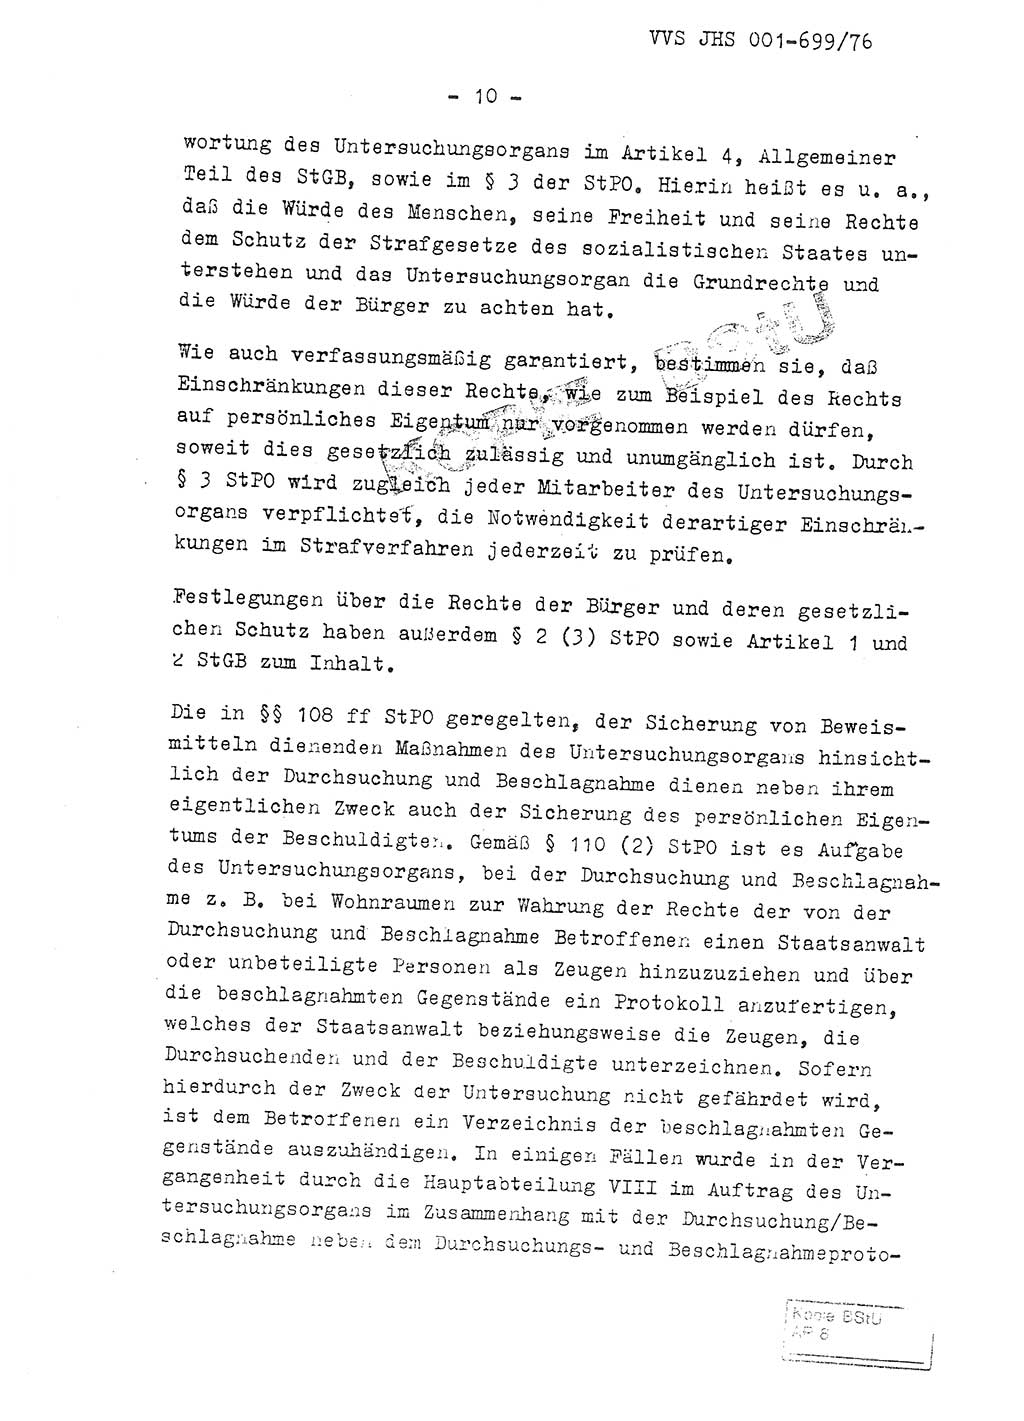 Fachschulabschlußarbeit Leutnant Volkmar Taubert (HA Ⅸ/9), Leutnant Axel Naumann (HA Ⅸ/9), Unterleutnat Detlef Debski (HA Ⅸ/9), Ministerium für Staatssicherheit (MfS) [Deutsche Demokratische Republik (DDR)], Juristische Hochschule (JHS), Vertrauliche Verschlußsache (VVS) 001-699/76, Potsdam 1976, Seite 10 (FS-Abschl.-Arb. MfS DDR JHS VVS 001-699/76 1976, S. 10)